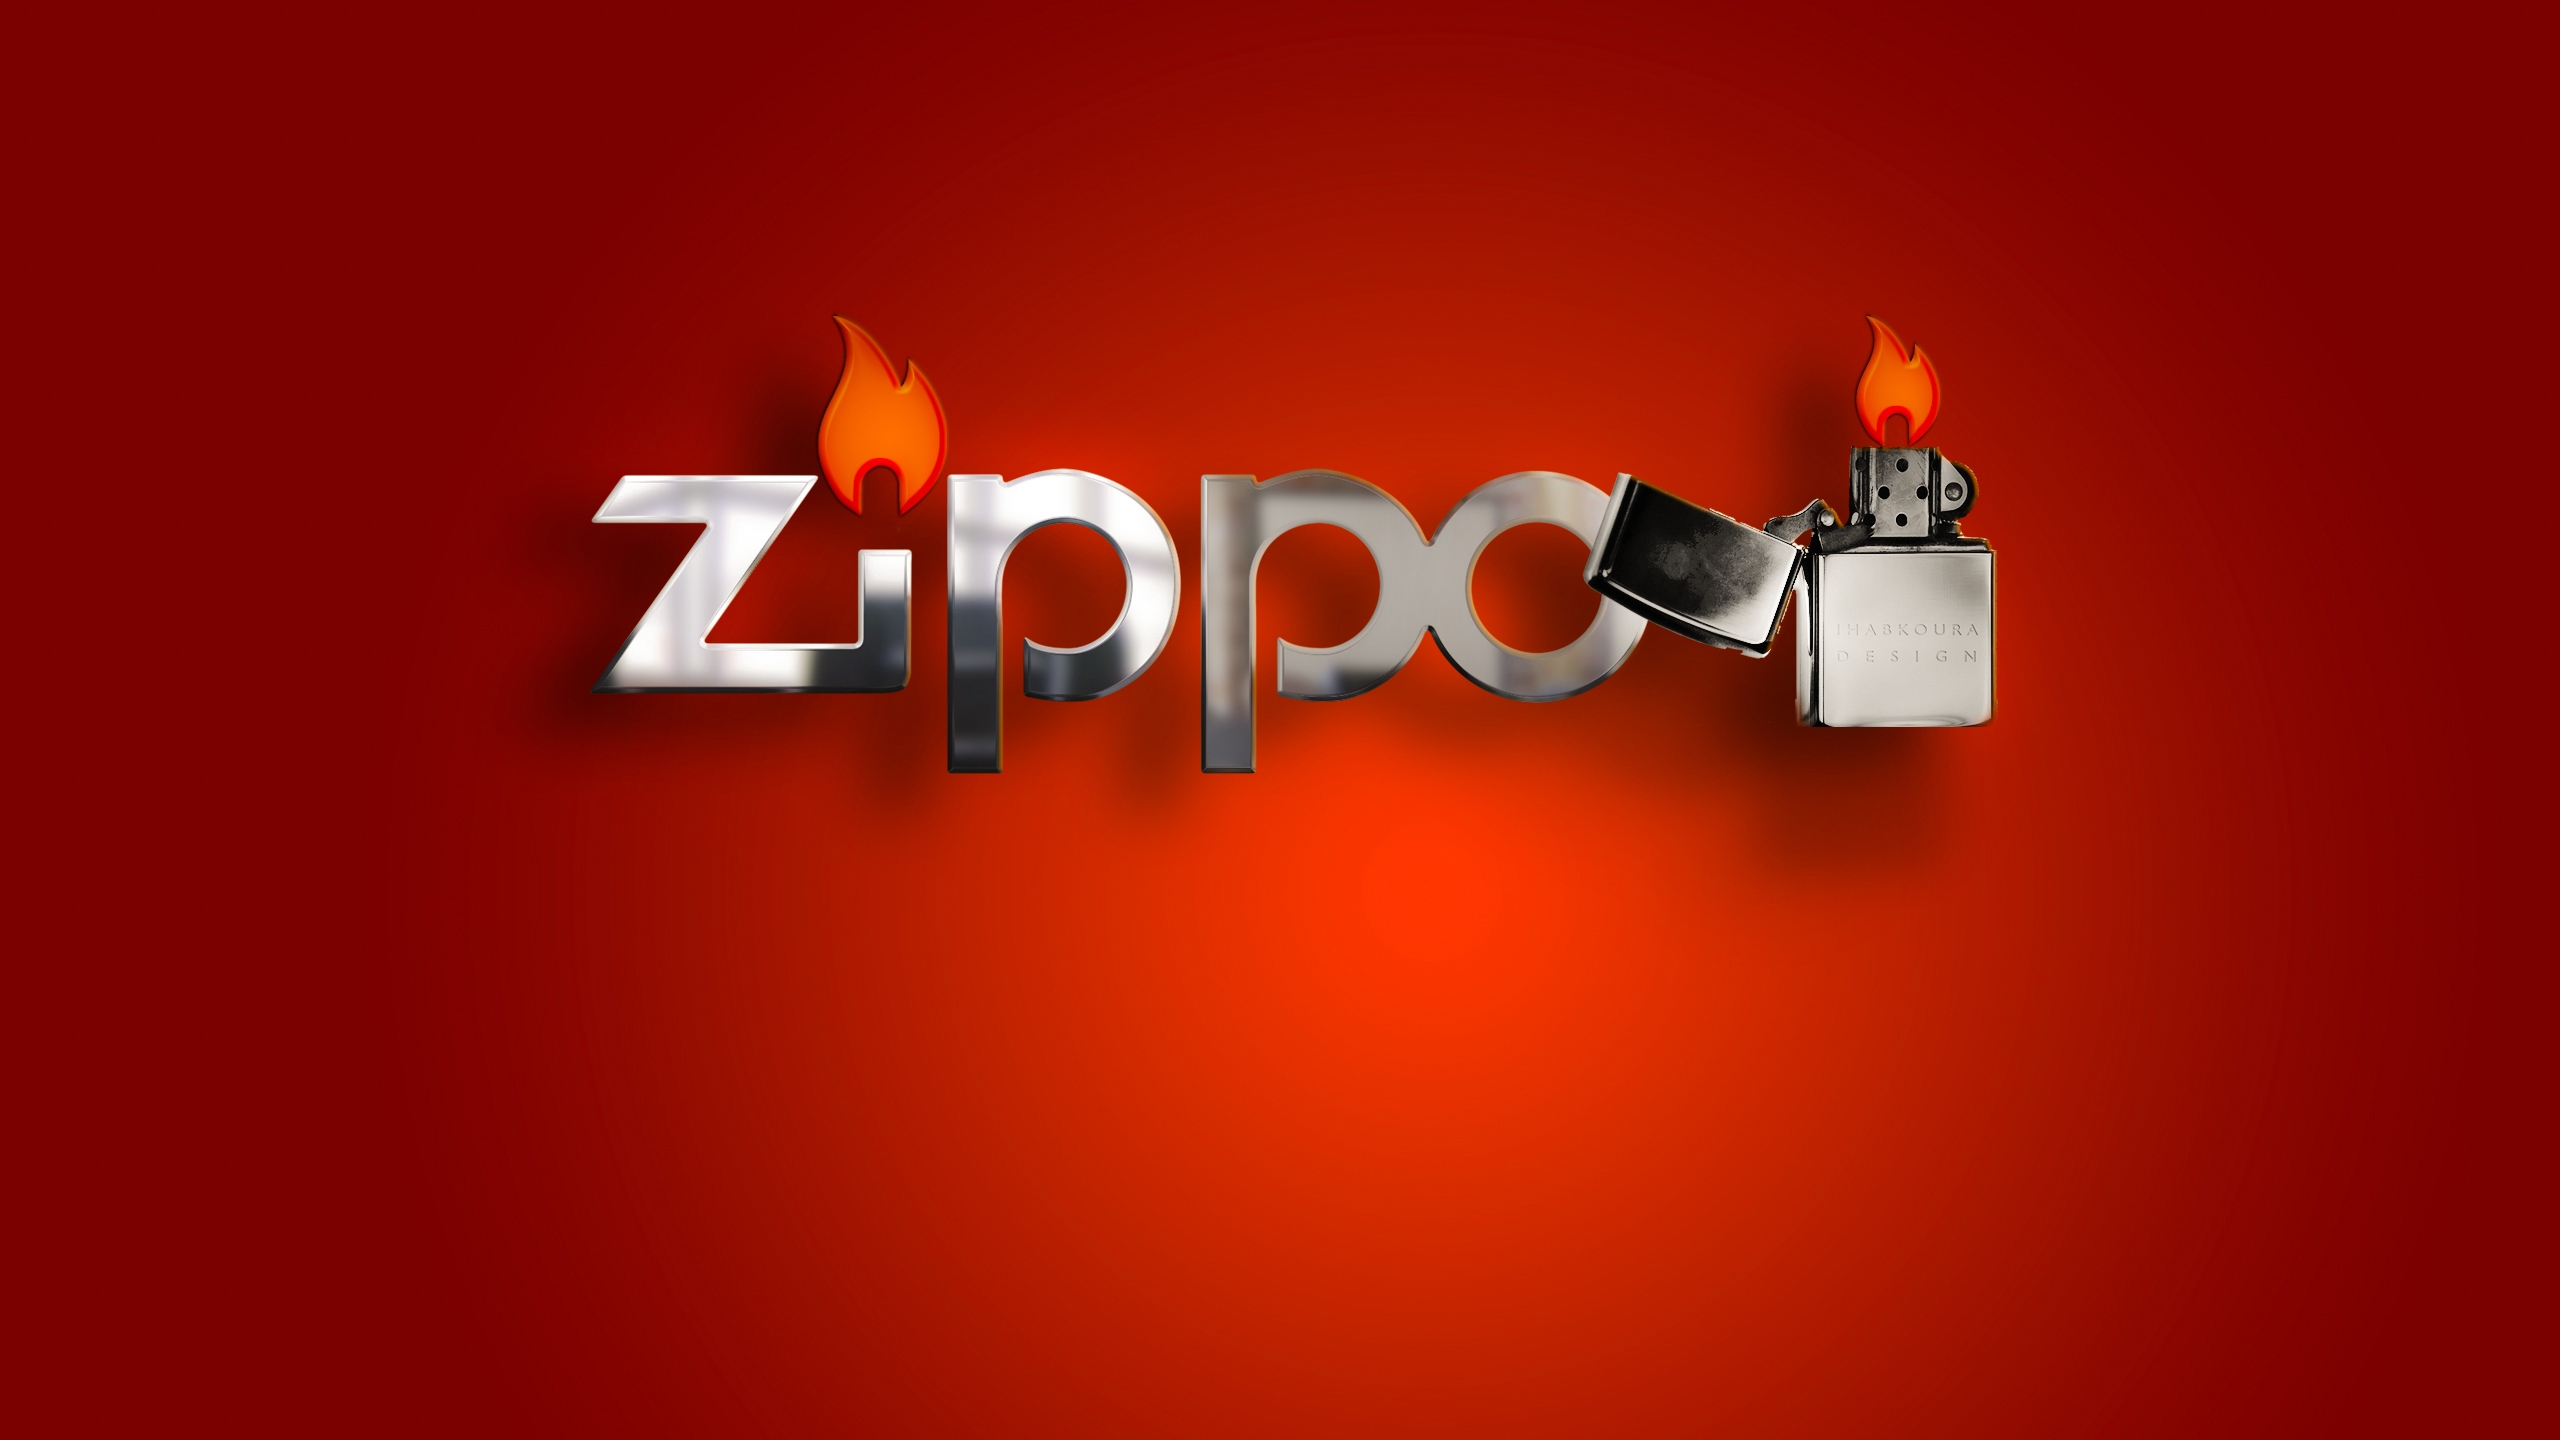 Zippo Lighter for 2560x1440 HDTV resolution